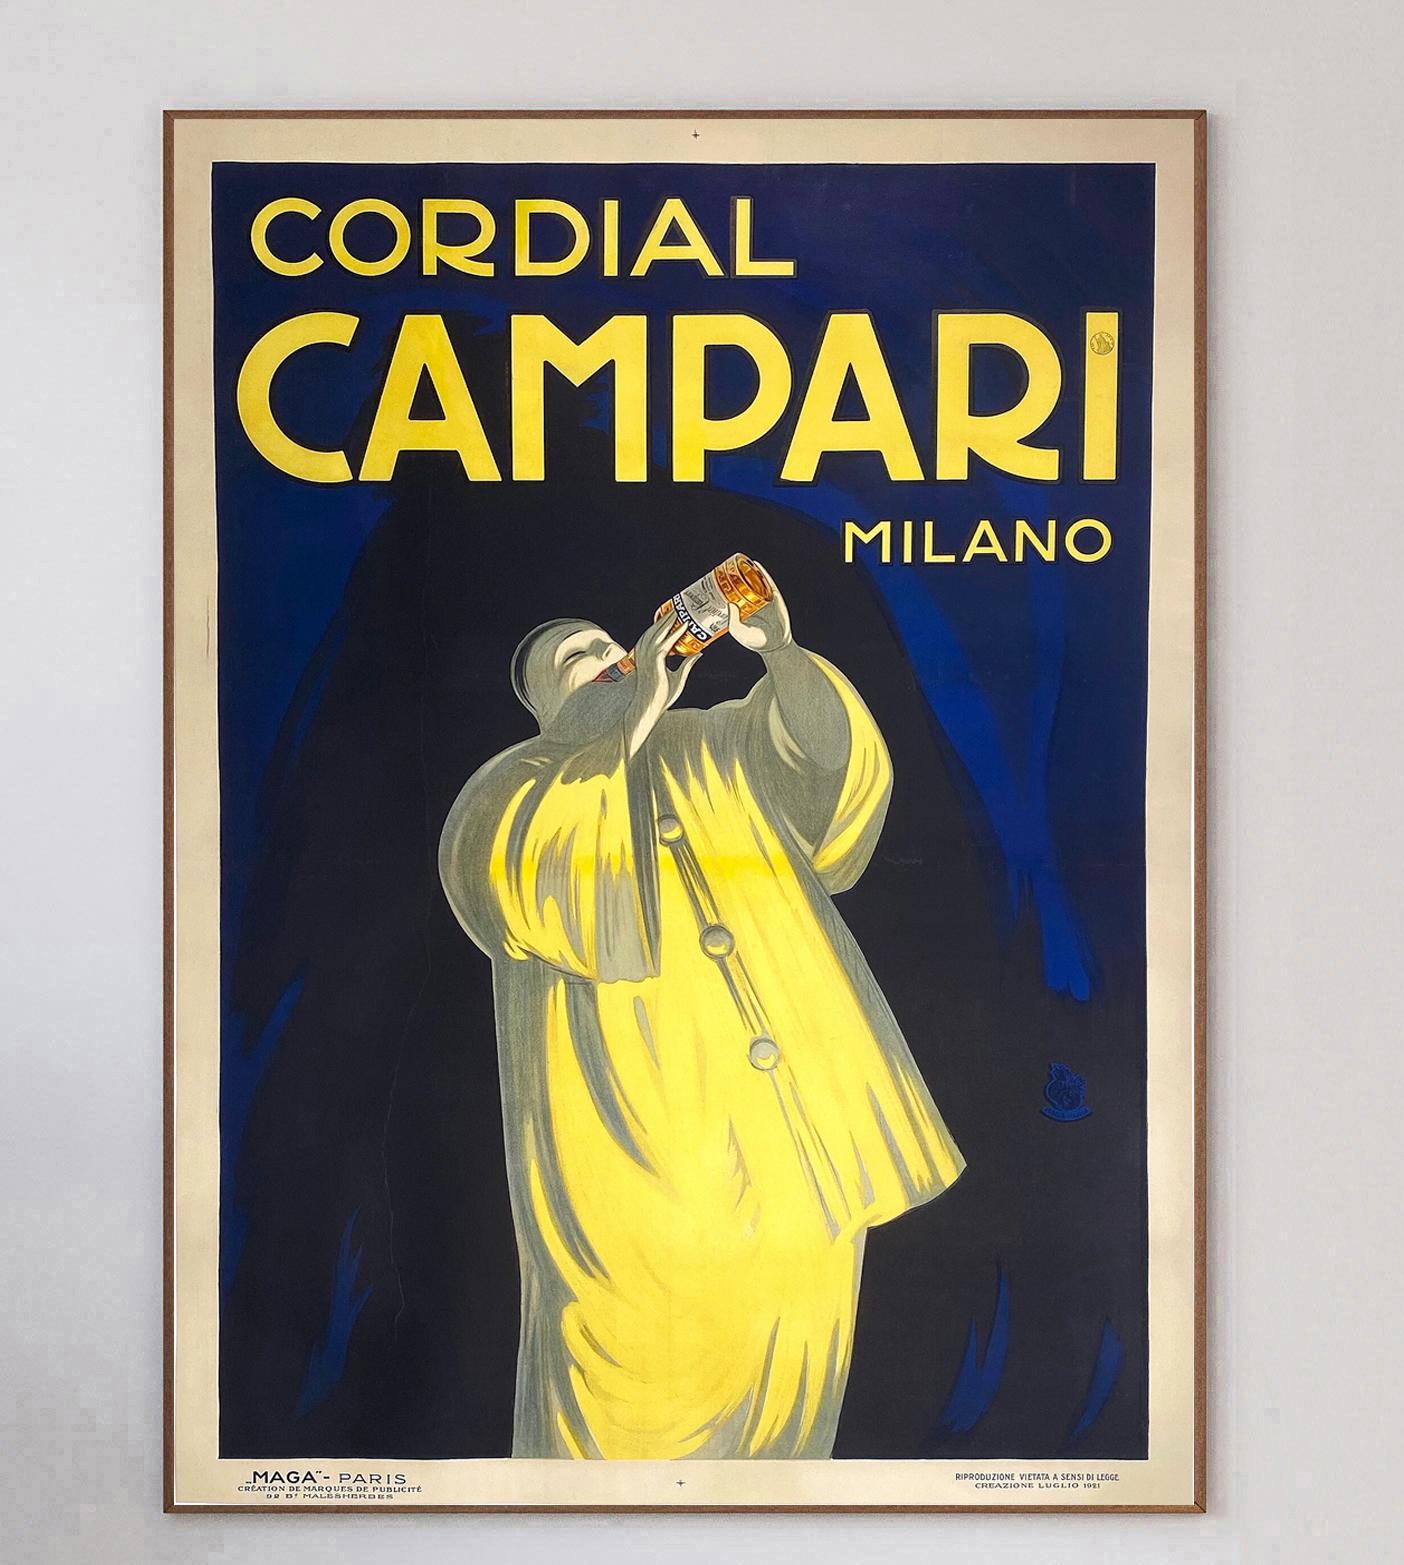 L'emblématique marque de liqueur italienne Campari a fait appel au célèbre affichiste franco-italien Leonetto Icone pour créer un certain nombre de designs variés au début du XXe siècle.

Campari a été formé en 1860 par Gaspare Campari et l'apéritif